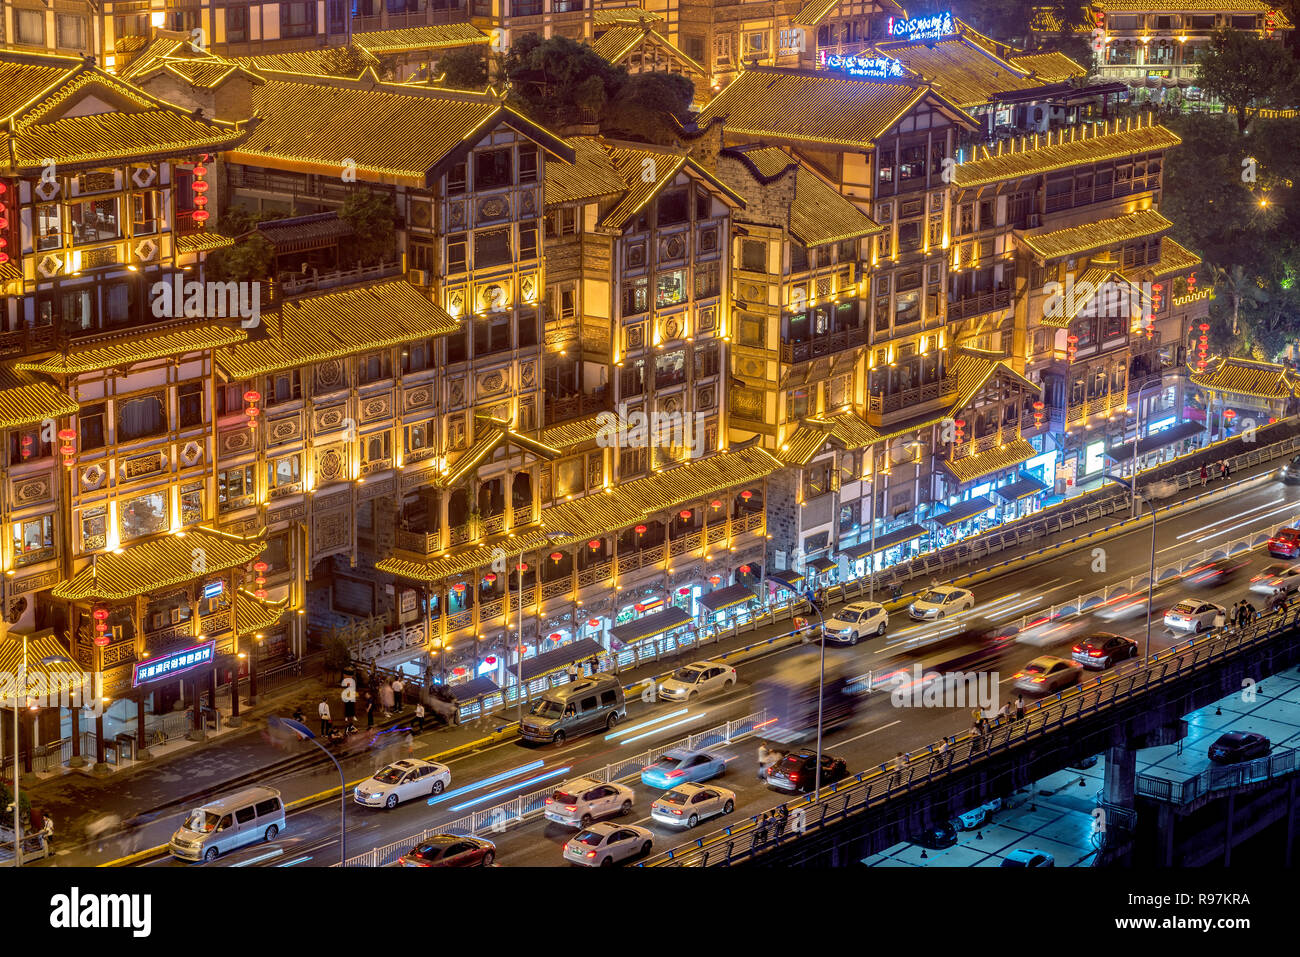 CHONGQING, CHINA - 18. SEPTEMBER: Dies ist ein Blick auf die traditionelle Architektur an Hongyadong, ein beliebtes Touristenziel mit Geschäften und Restaurant Stockfoto